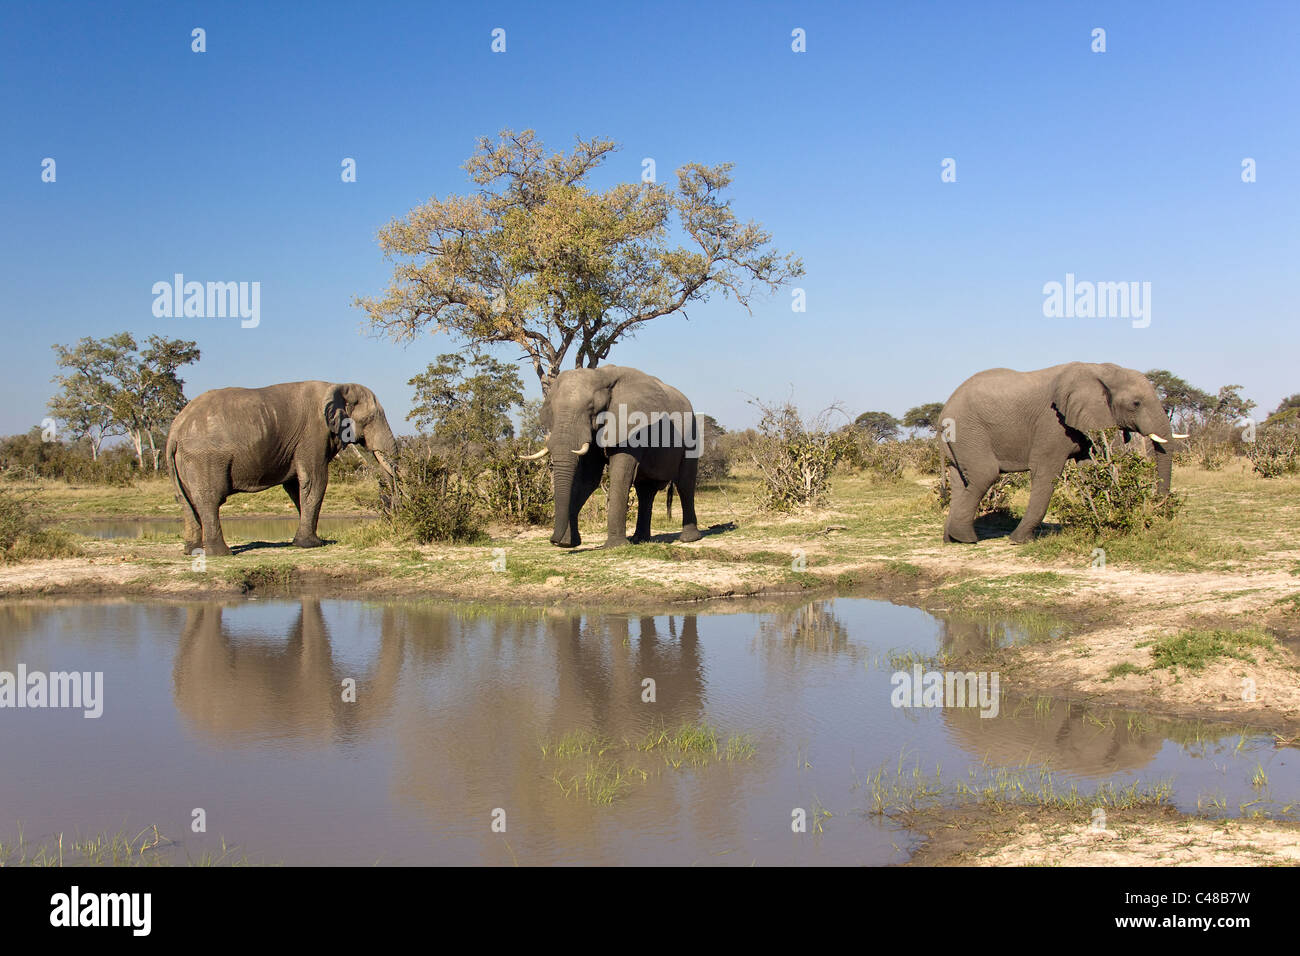 Afrikanische Elefanten (Loxodonta africana) am natürlichen Wasserloch, Savuti, Botswana, Afrika Stock Photo